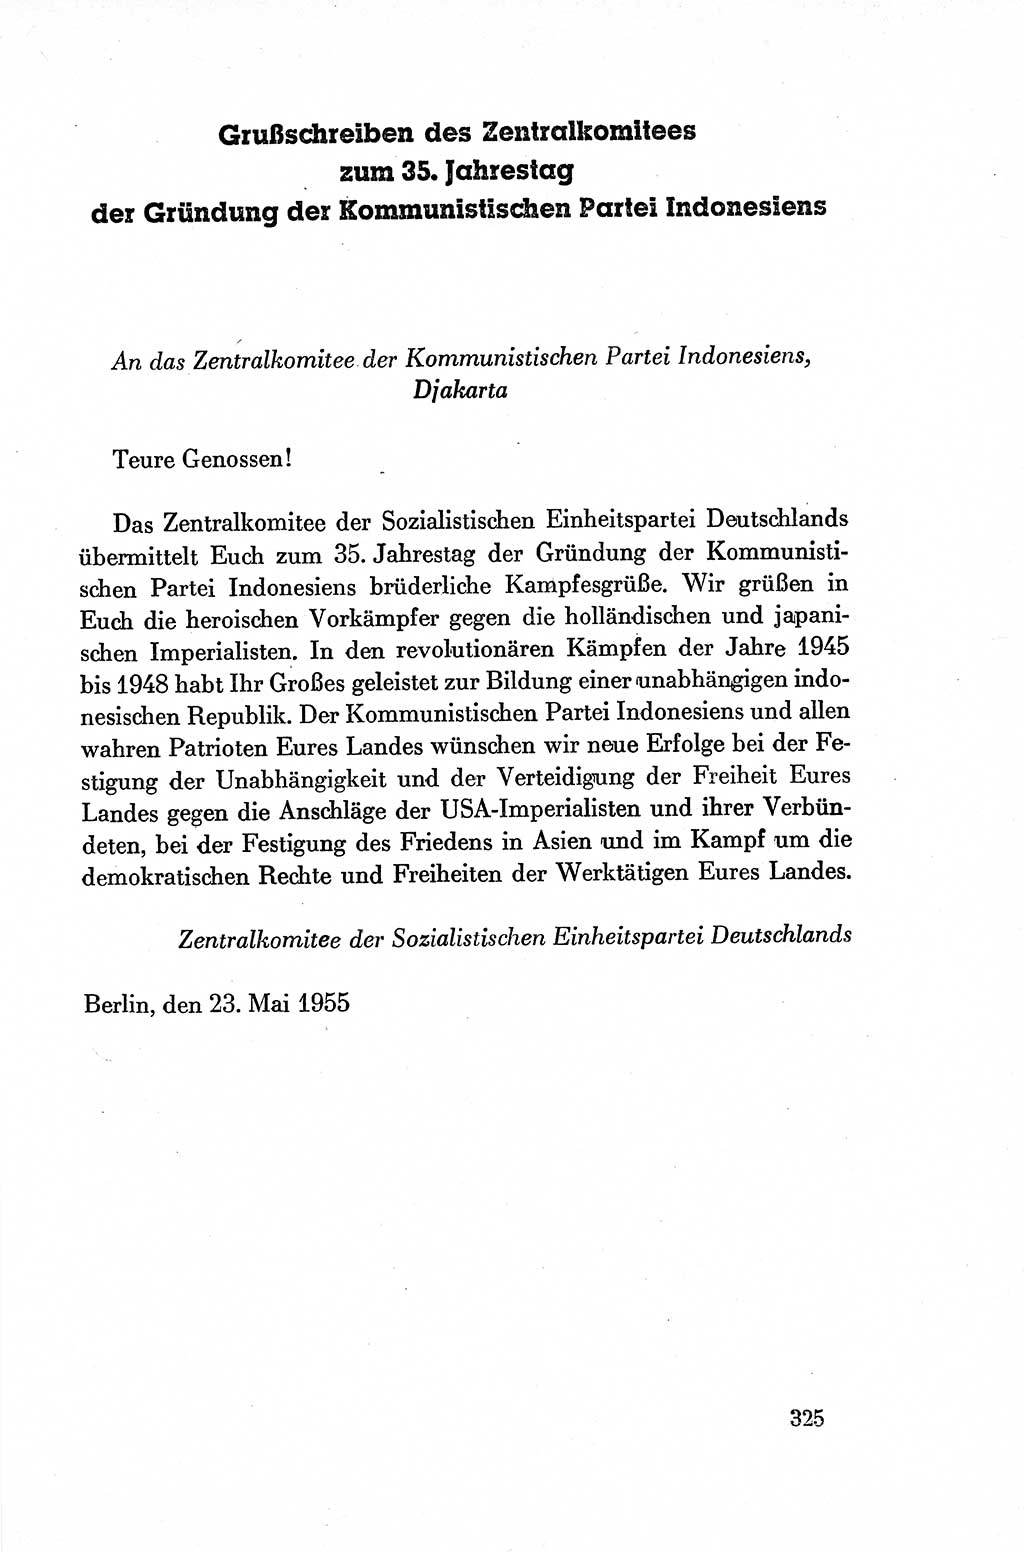 Dokumente der Sozialistischen Einheitspartei Deutschlands (SED) [Deutsche Demokratische Republik (DDR)] 1954-1955, Seite 325 (Dok. SED DDR 1954-1955, S. 325)